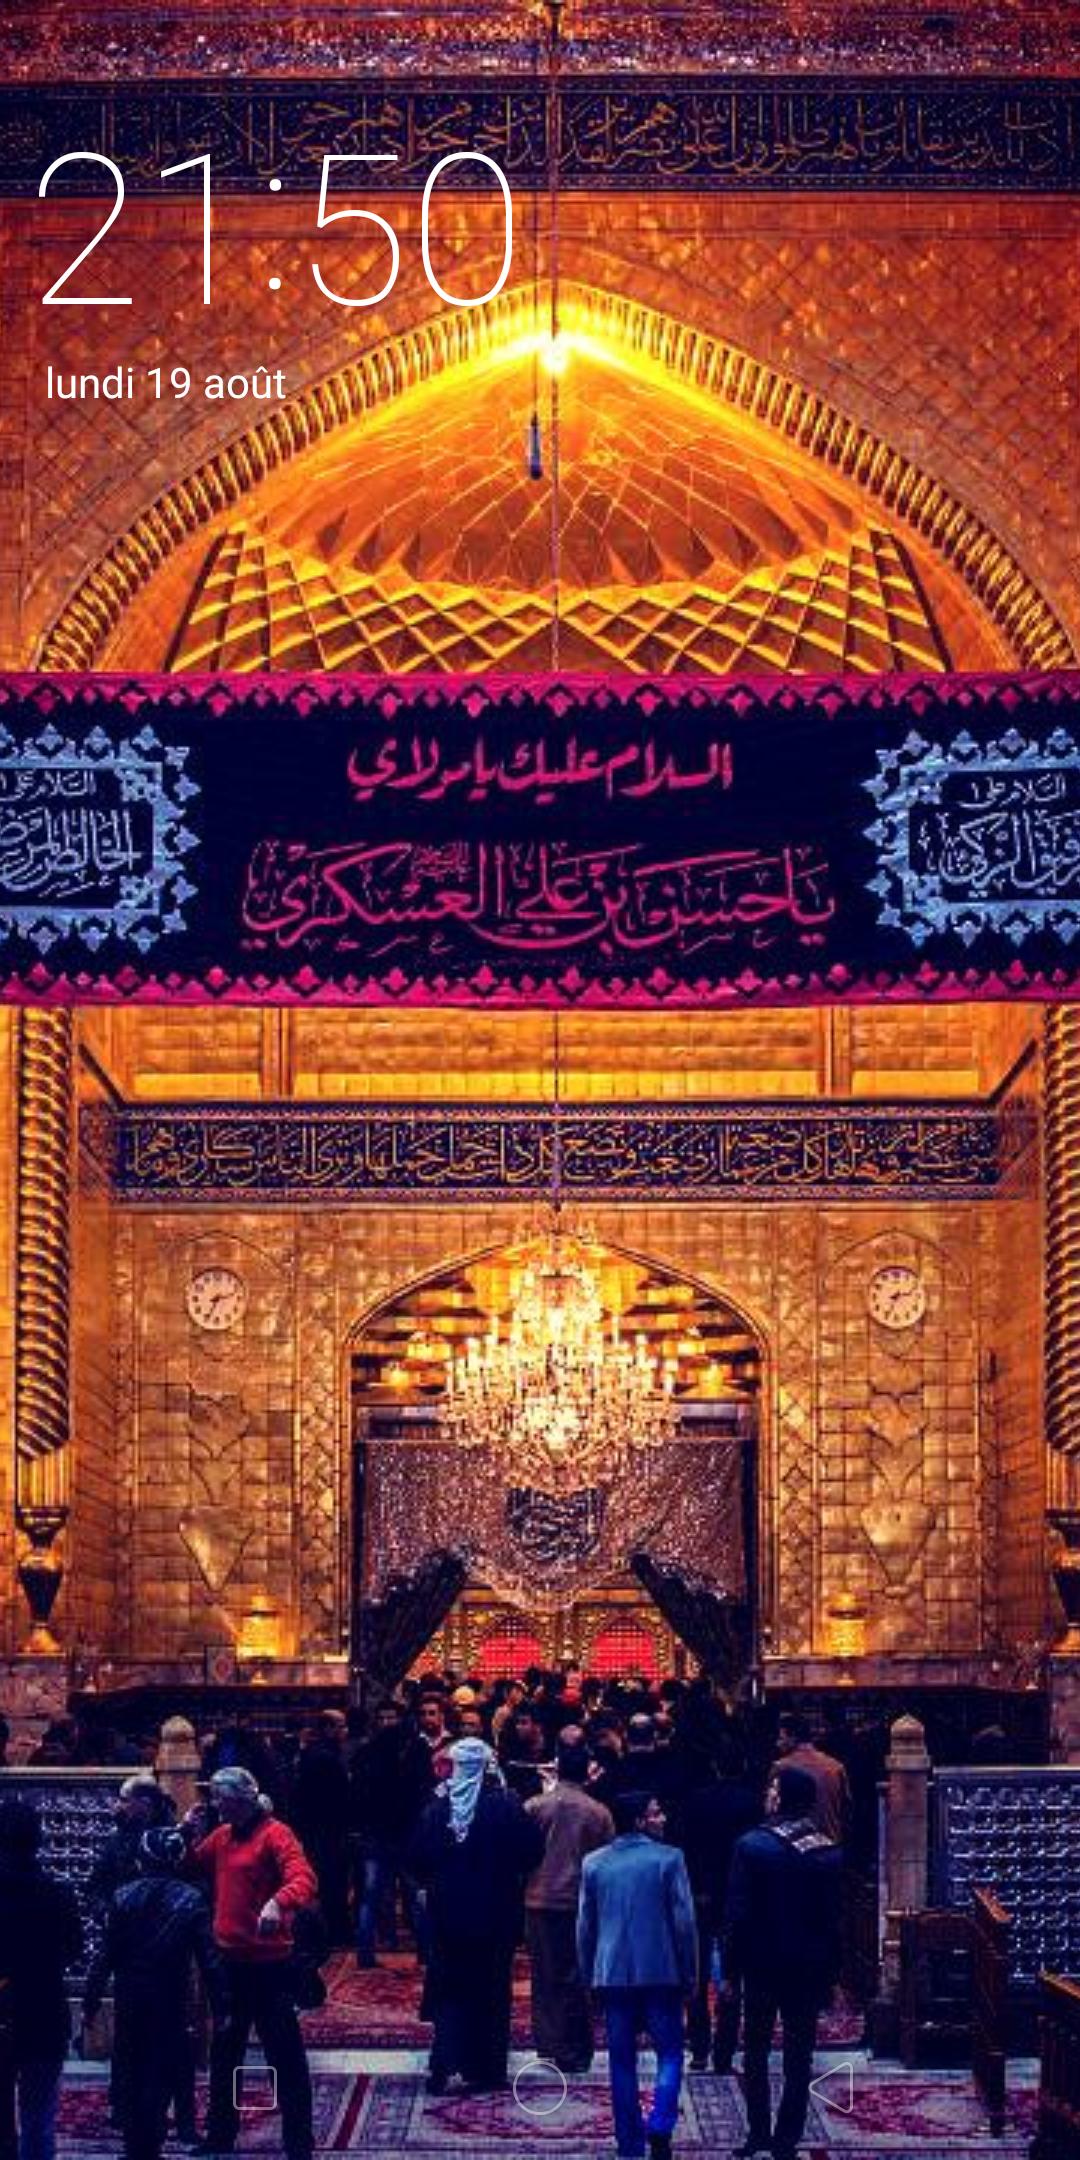 Imam Husain Shrine wallpaper 2019